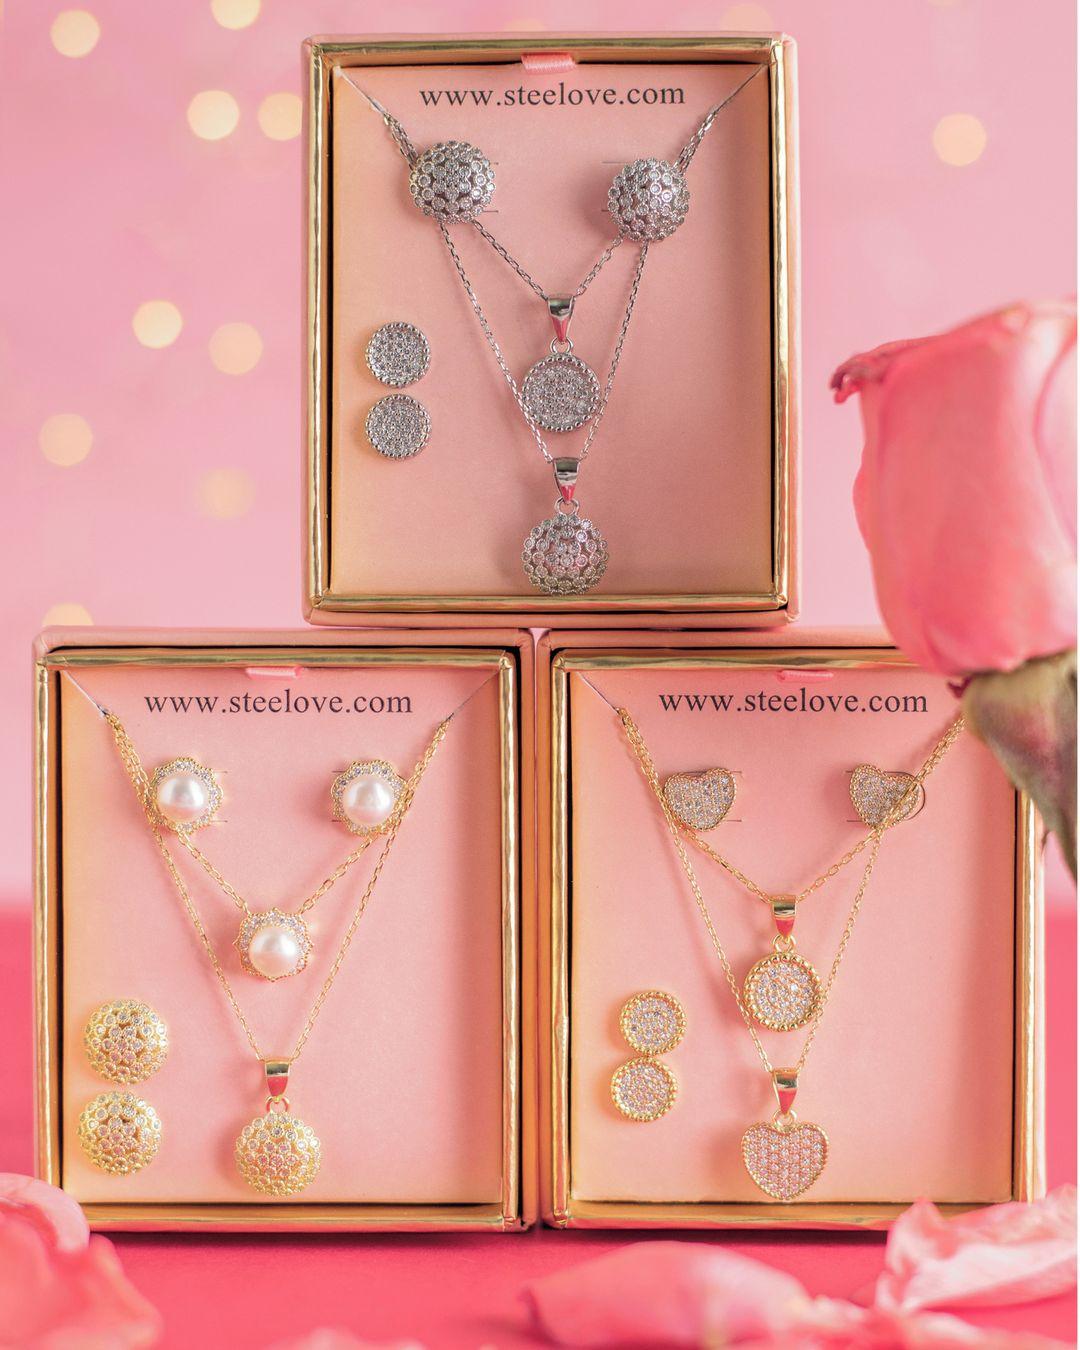 𝐒𝐨𝐫𝐩𝐫𝐞́𝐧𝐝𝐞𝐥𝐚 𝐜𝐨𝐧 𝐮𝐧 𝐝𝐞𝐭𝐚𝐥𝐥𝐞 𝐪𝐮𝐞 𝐥𝐚 𝐞𝐧𝐚𝐦𝐨𝐫𝐞 𝐚𝐮́𝐧 𝐦𝐚́𝐬 ❤️⁣
Encontrarás las piezas perfectas para ella.⁣
⁣
Déjame un 😍 si quieres que te mande la guía completa de San Valentín.⁣
⁣
Te leo en los comentarios. 👀⬇️👇🏽😘⁣.⁣
⁣⁣
📍AGORA MALL 📍DOWNTOWN 📍PLAZA LAS AMÉRICAS II⁣⁣
www.steelove.com⁣⁣
🛍️WhatsApp ＋1-809-567-0540 ＋1-201-952-8518⁣⁣
⁣⁣
#steelovestore #joyas #jewelry #accesorios #loveissteelove #loveatfirstsight #amoryamistad #sanvalentin